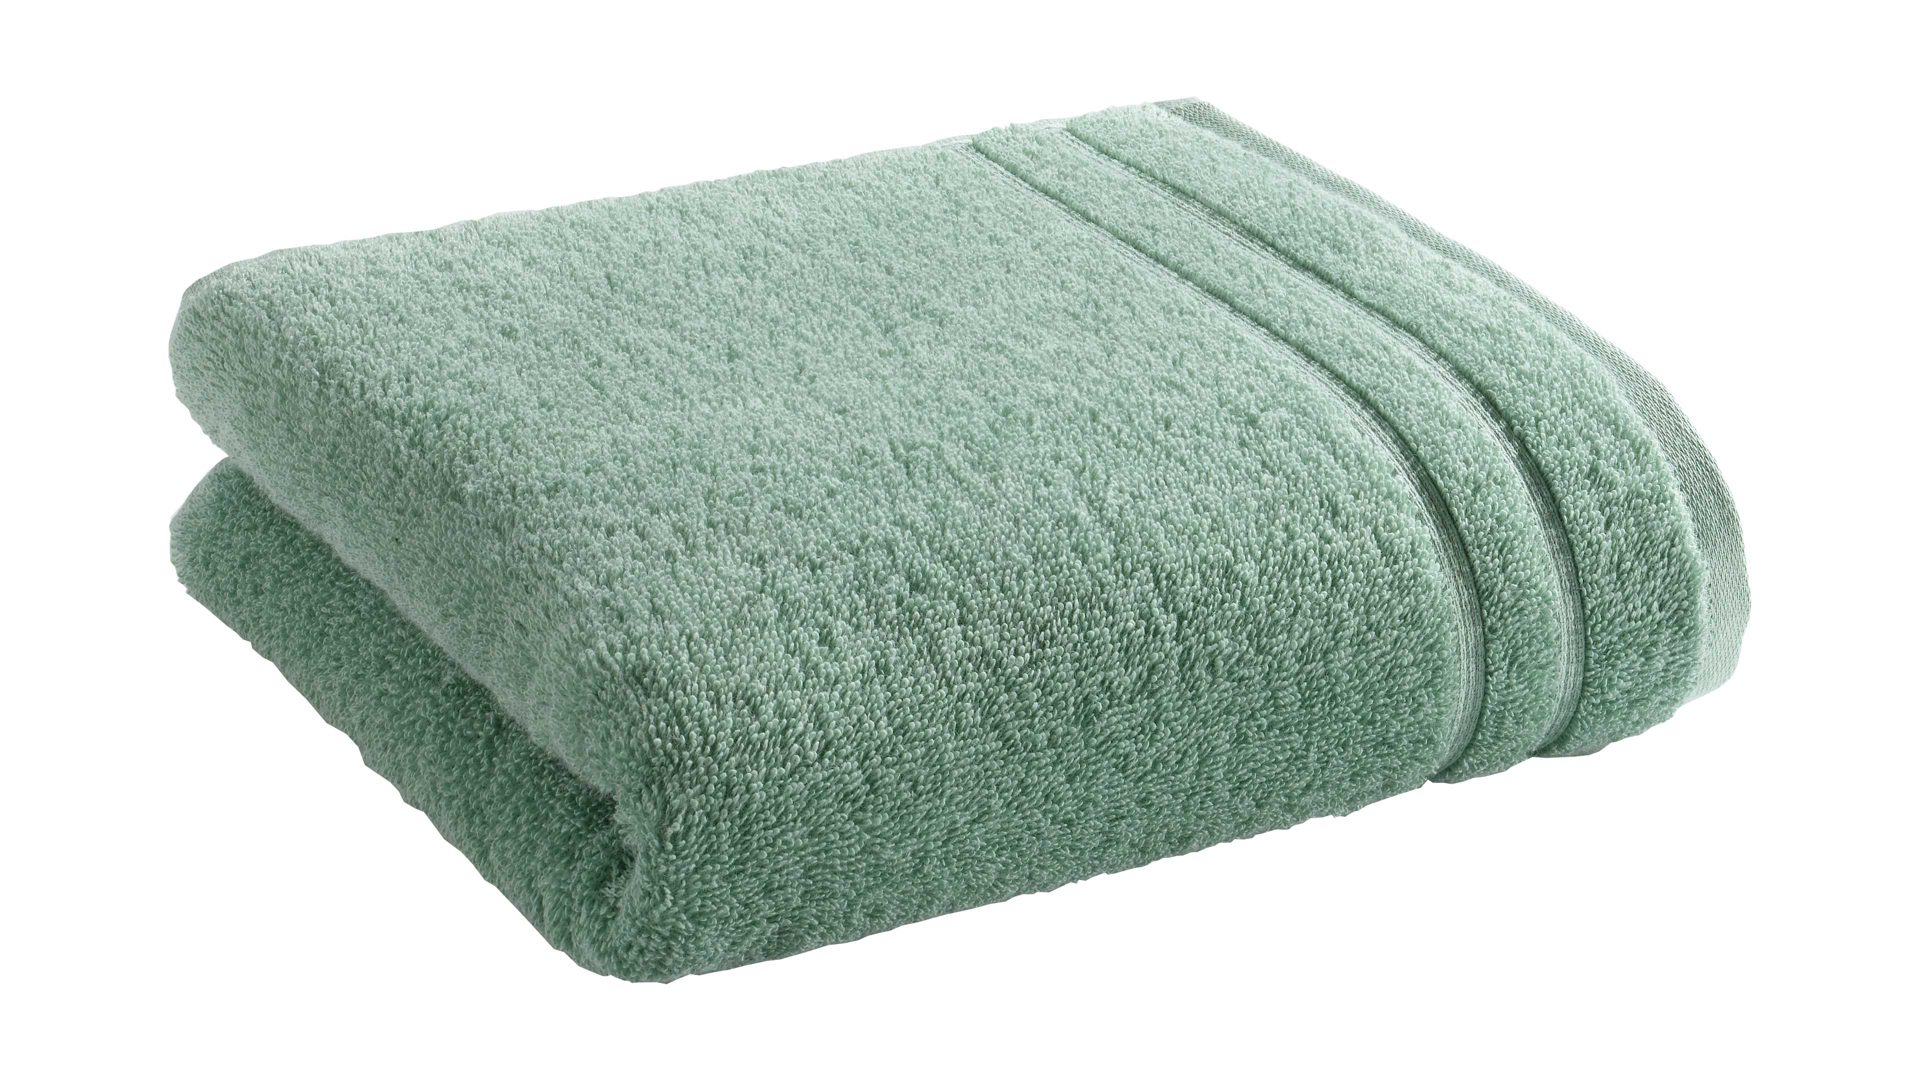 Handtuch Vossen aus Naturfaser in Hellgrün VOSSEN® Handtuch Four Seasons blassgrüne Baumwolle ca. 50 x 100 cm